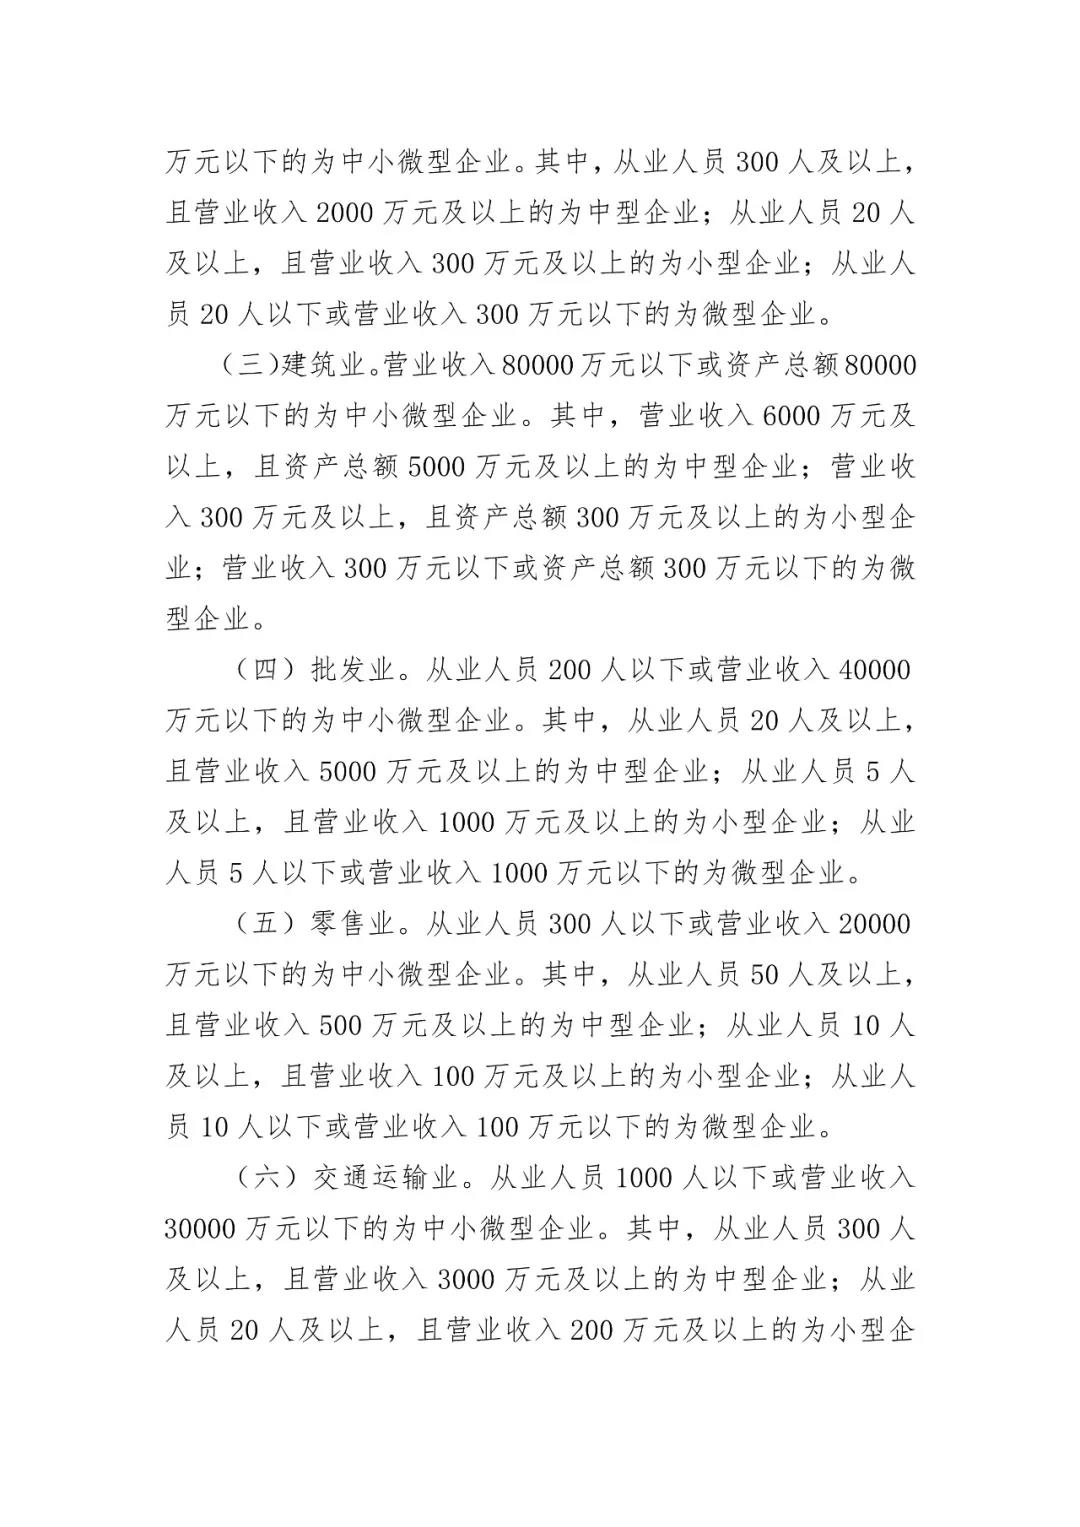 2019年北京市专利资助金申报（全文）